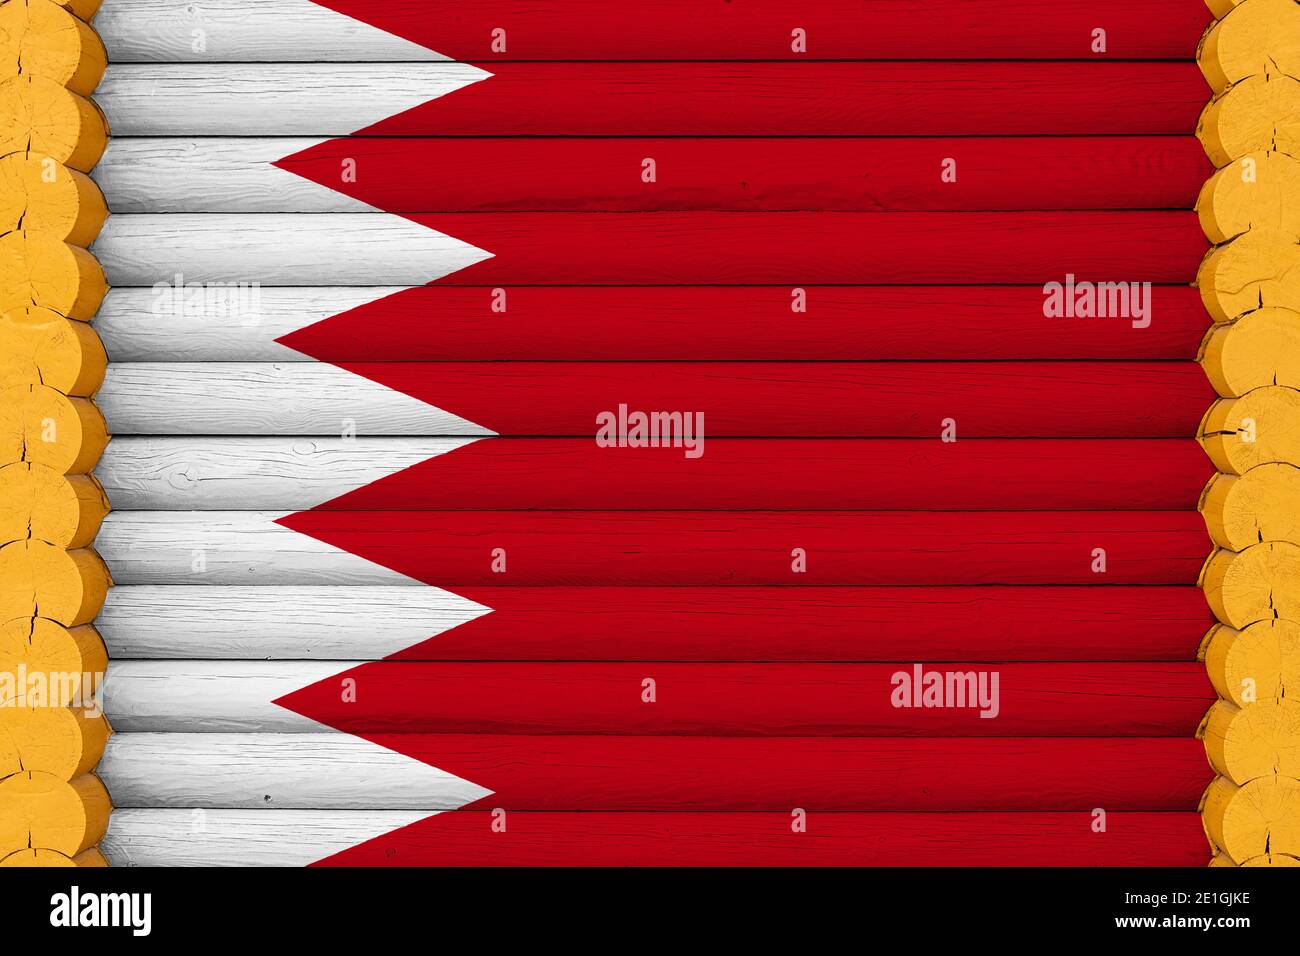 Drapeau national de Bahreïn sur fond de mur en bois. Le concept de fierté nationale et un symbole du pays. Drapeaux peints sur une maison Banque D'Images